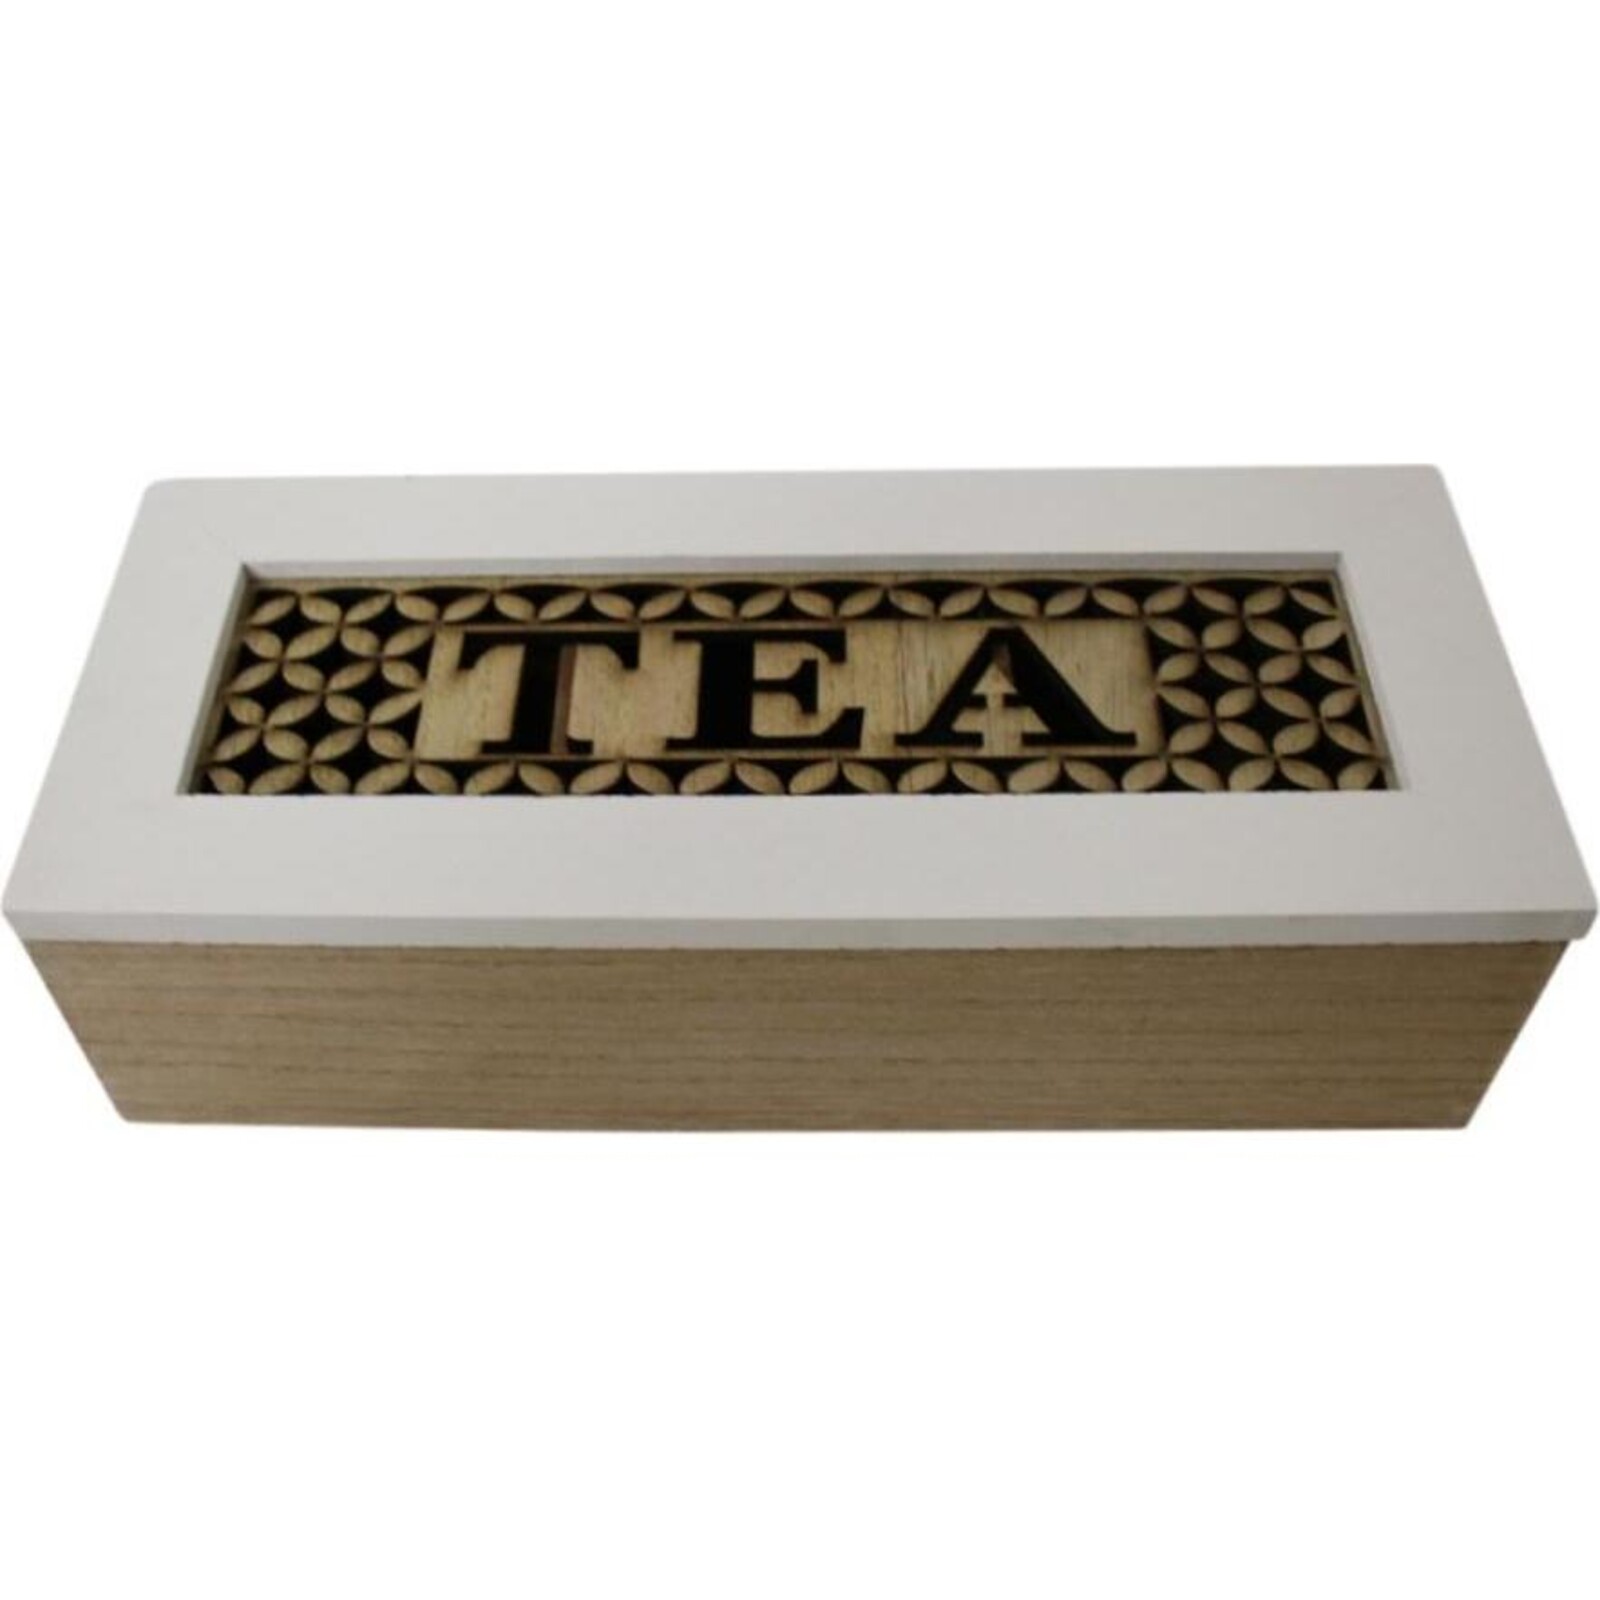 Box Tea Stamp Sml